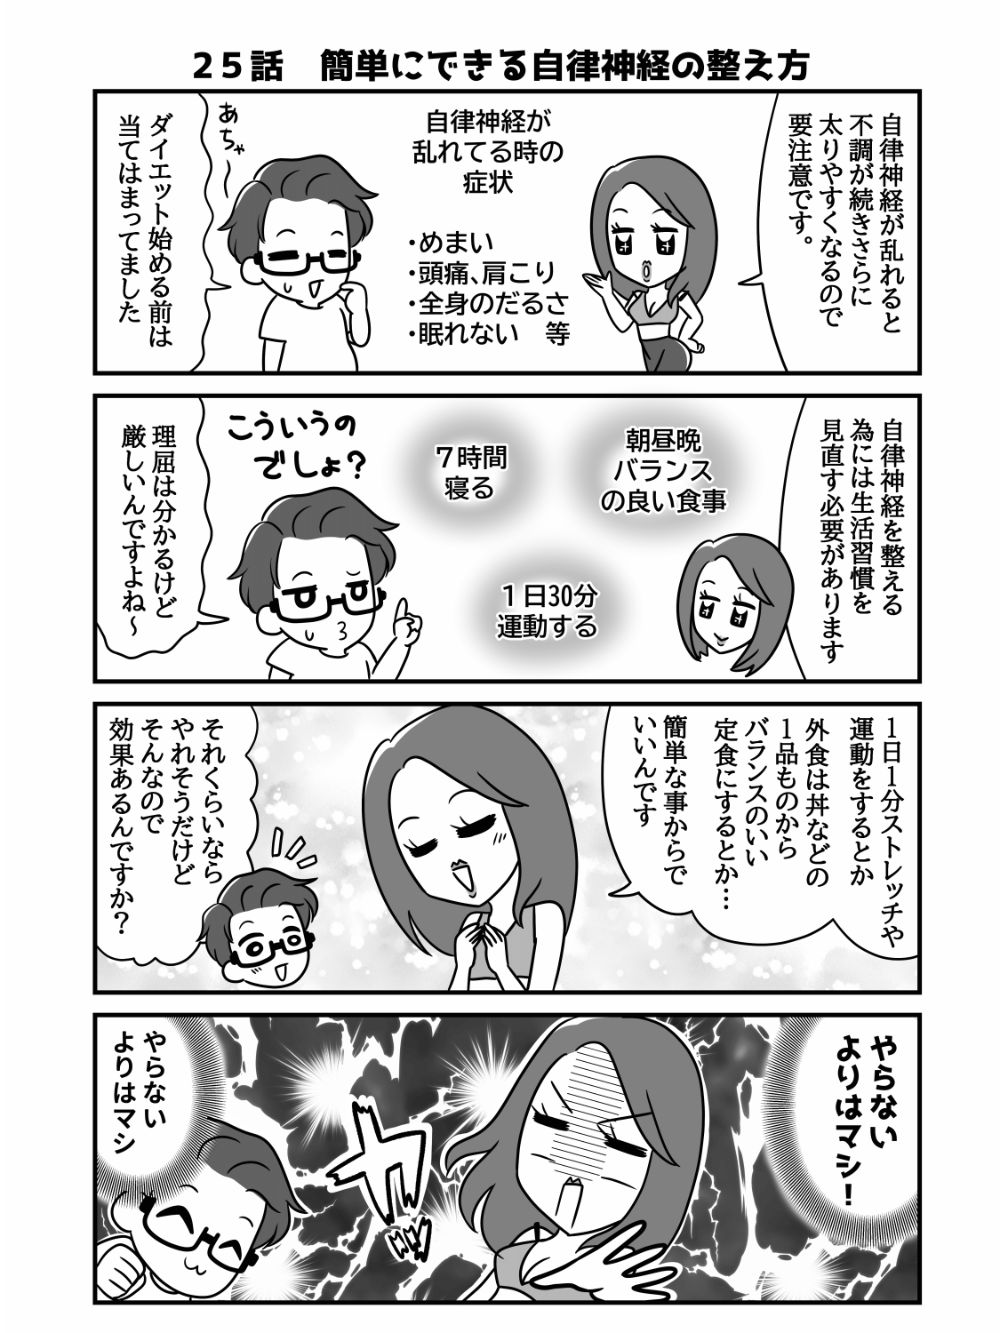 鬼軍曹ゆか様のパーソナルトレーニングレポ漫画（SNS用モノクロ）